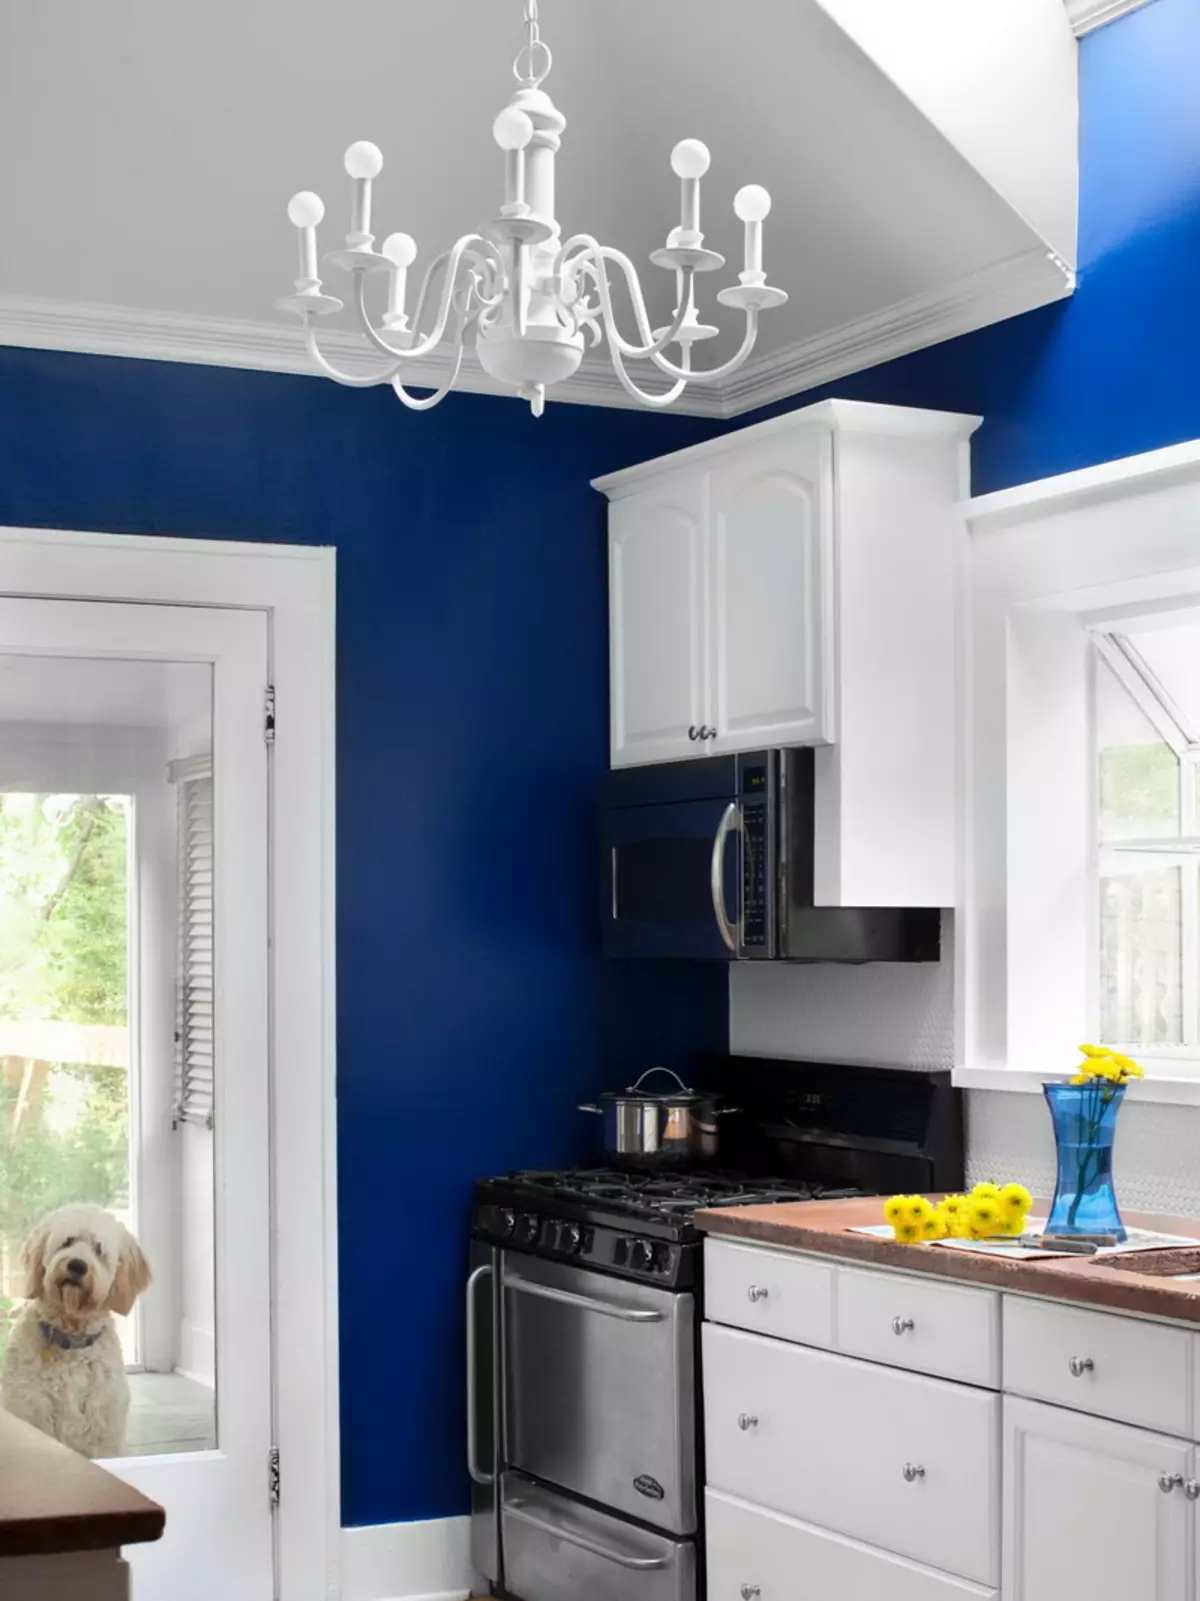 Cucina bianca-blu (64 foto): Caratteristiche dell'auricolare della cucina in colore bianco-blu per la cucina Interior design, accenti sulle pareti in colori simili 9393_28